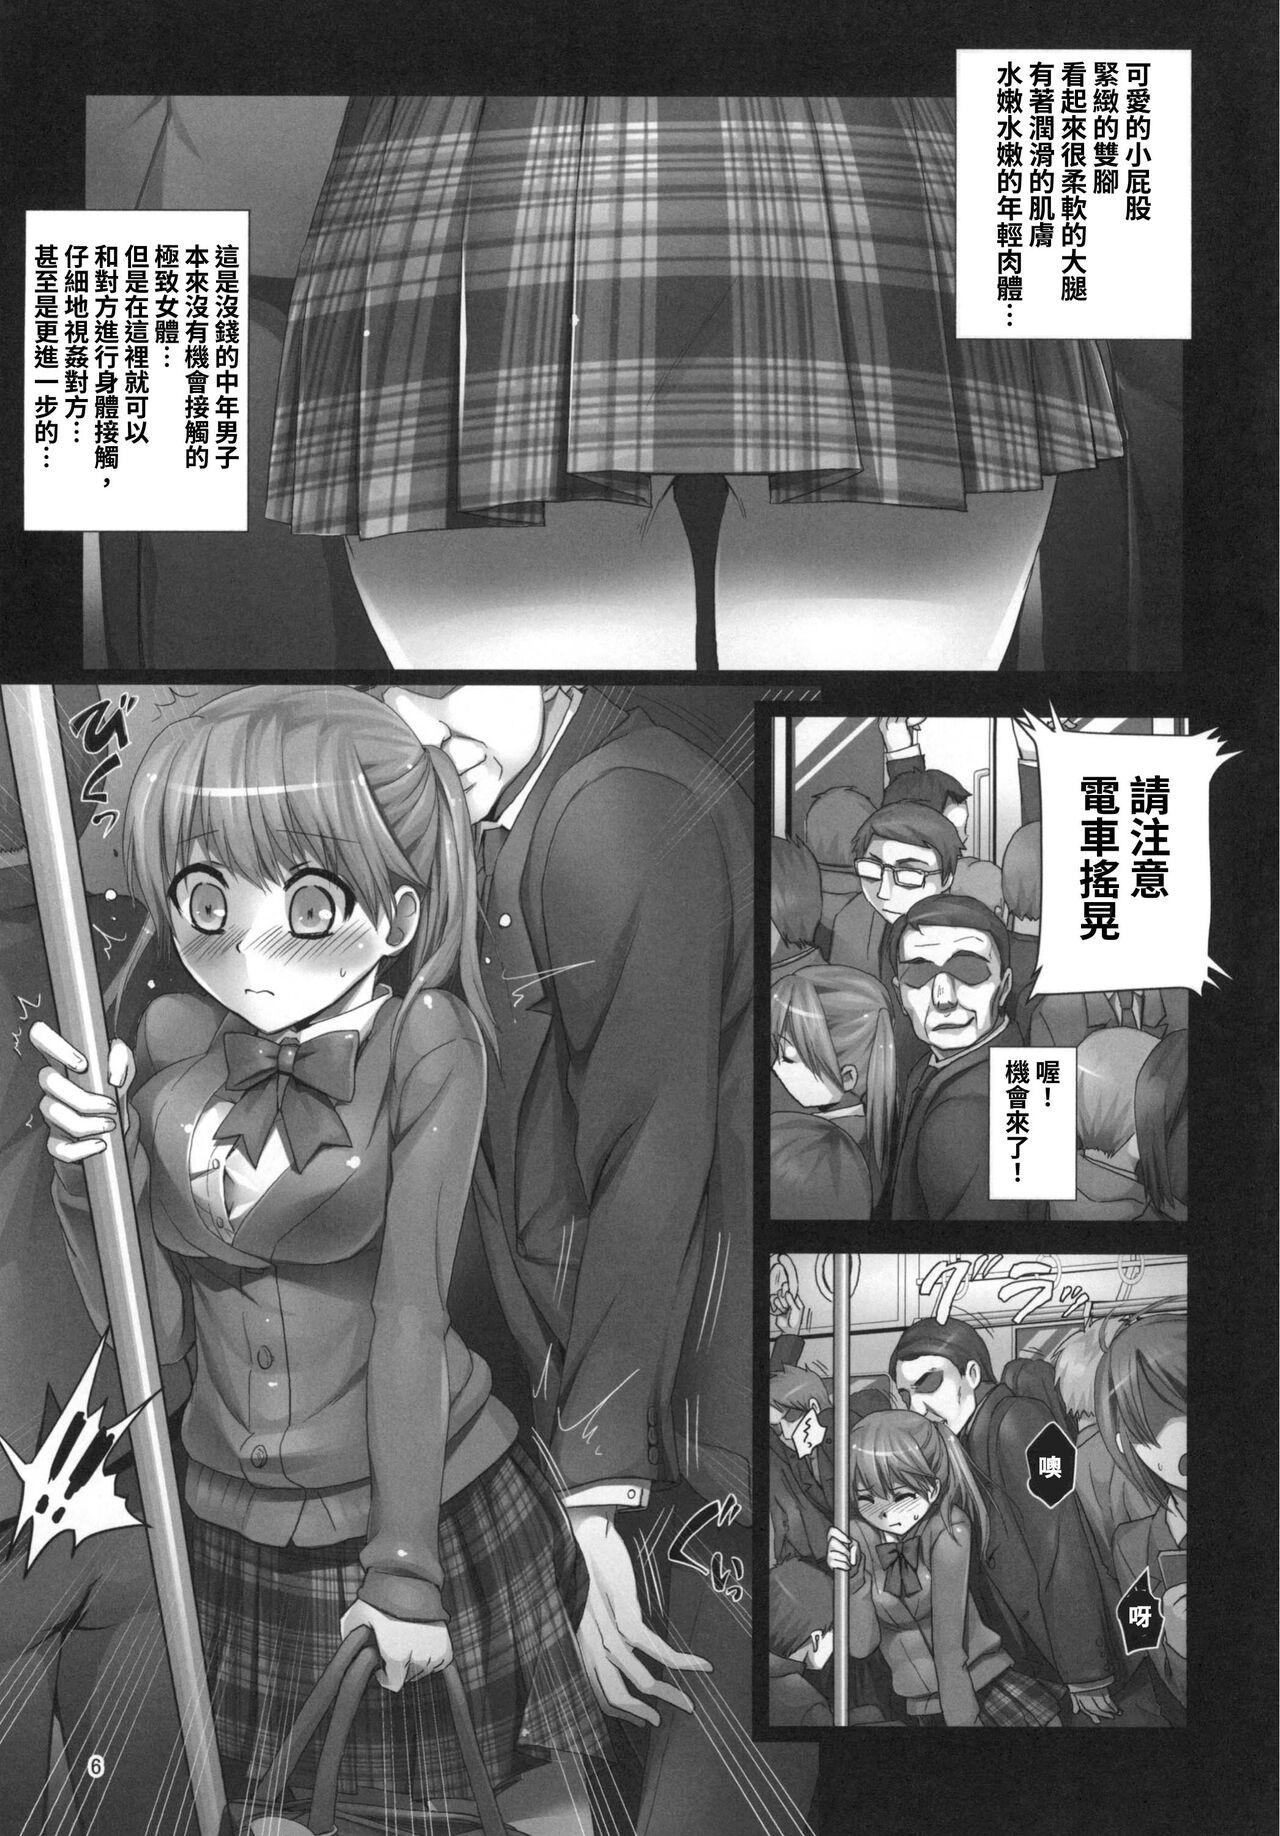 Titten 【繁体中文版】朝の満員電車で処女JKをどこまで開発できるのか - Original Amature - Page 6